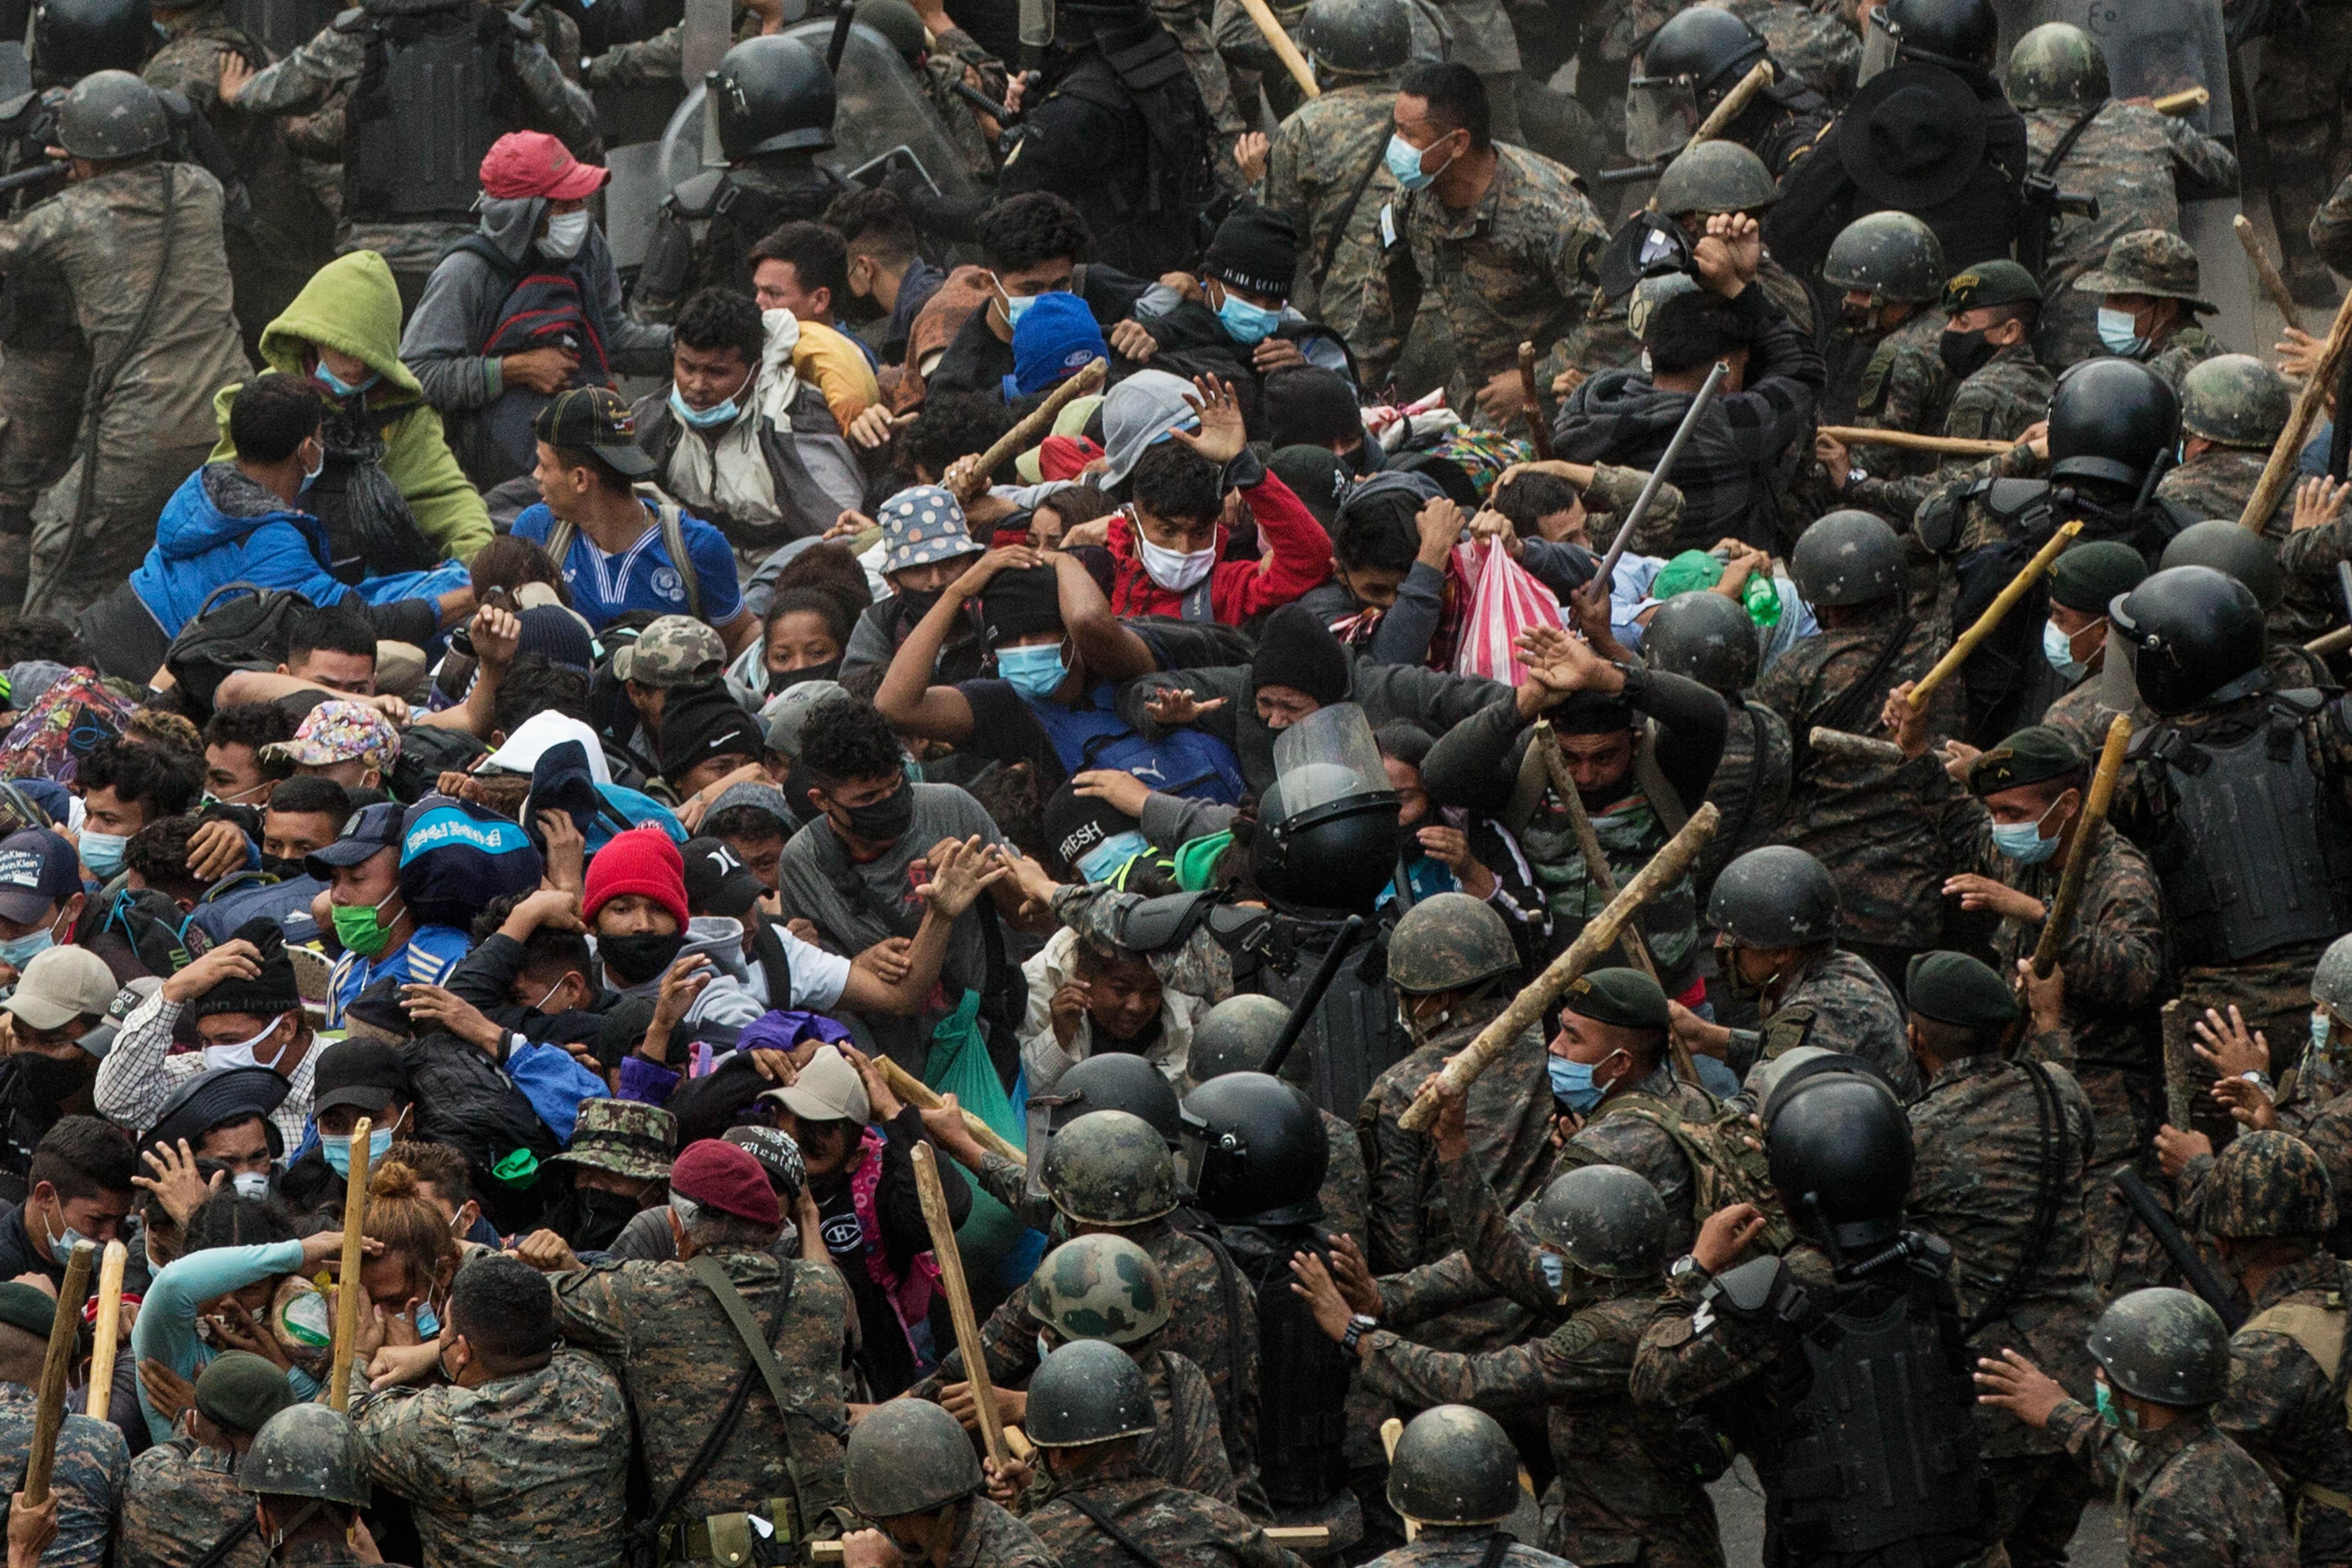 Las fuerzas de seguridad de Guatemala detuvieron y reprendieron a una caravana migrante compuesta por miles de hondureños. (Foto Prensa Libre: EFE)